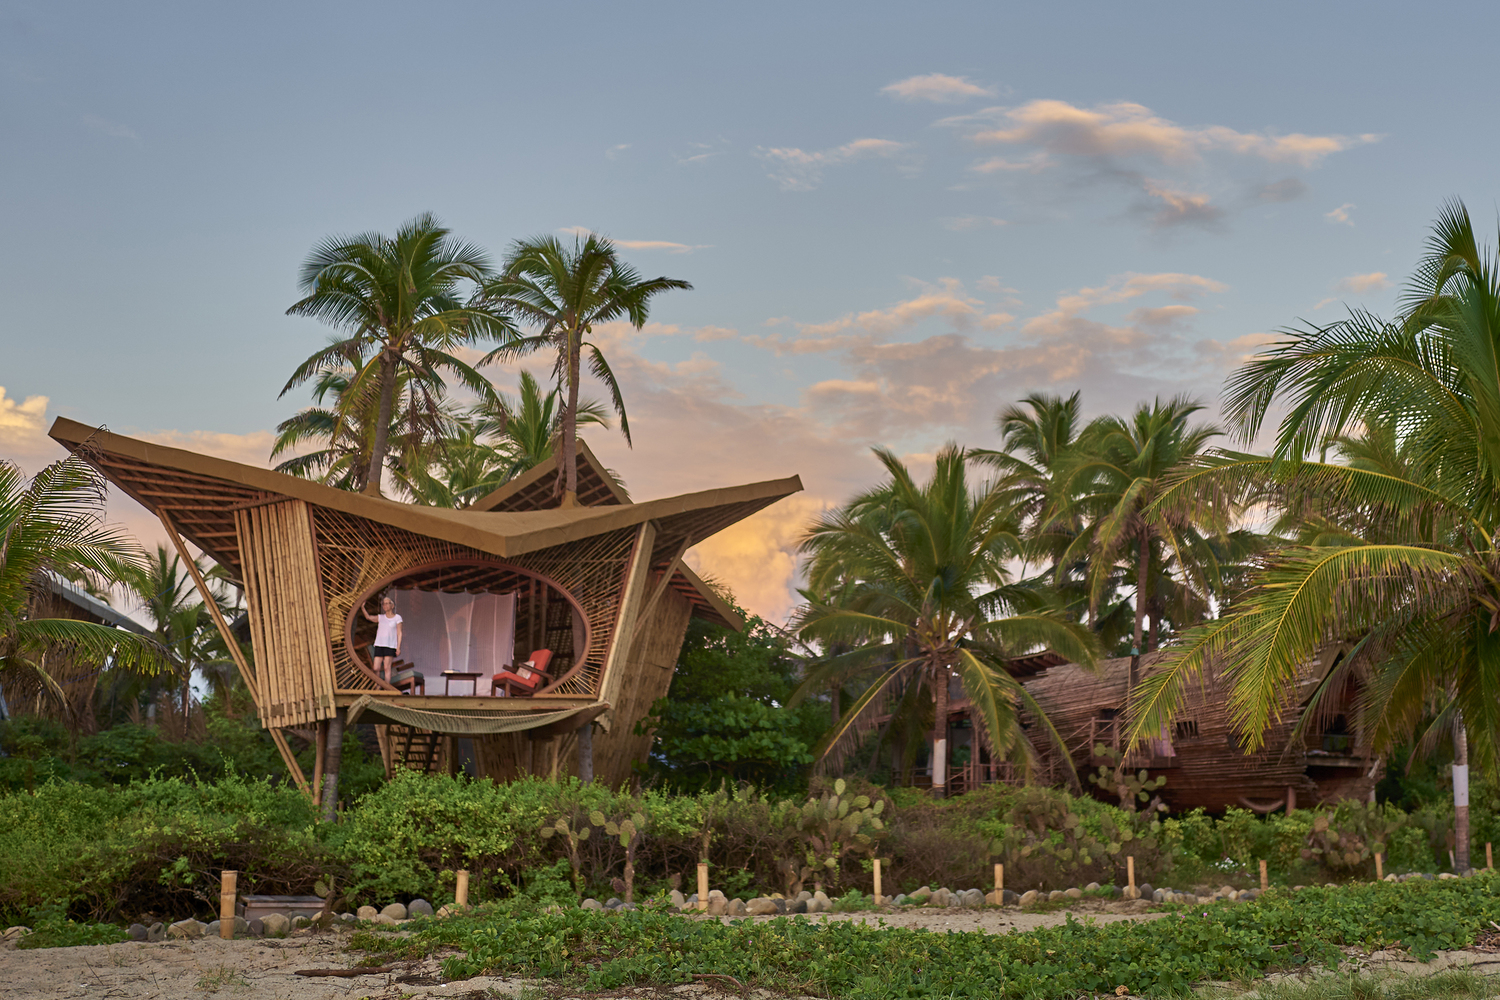 Resort en México tiene casas de árboles de bambú inmersas en la naturaleza